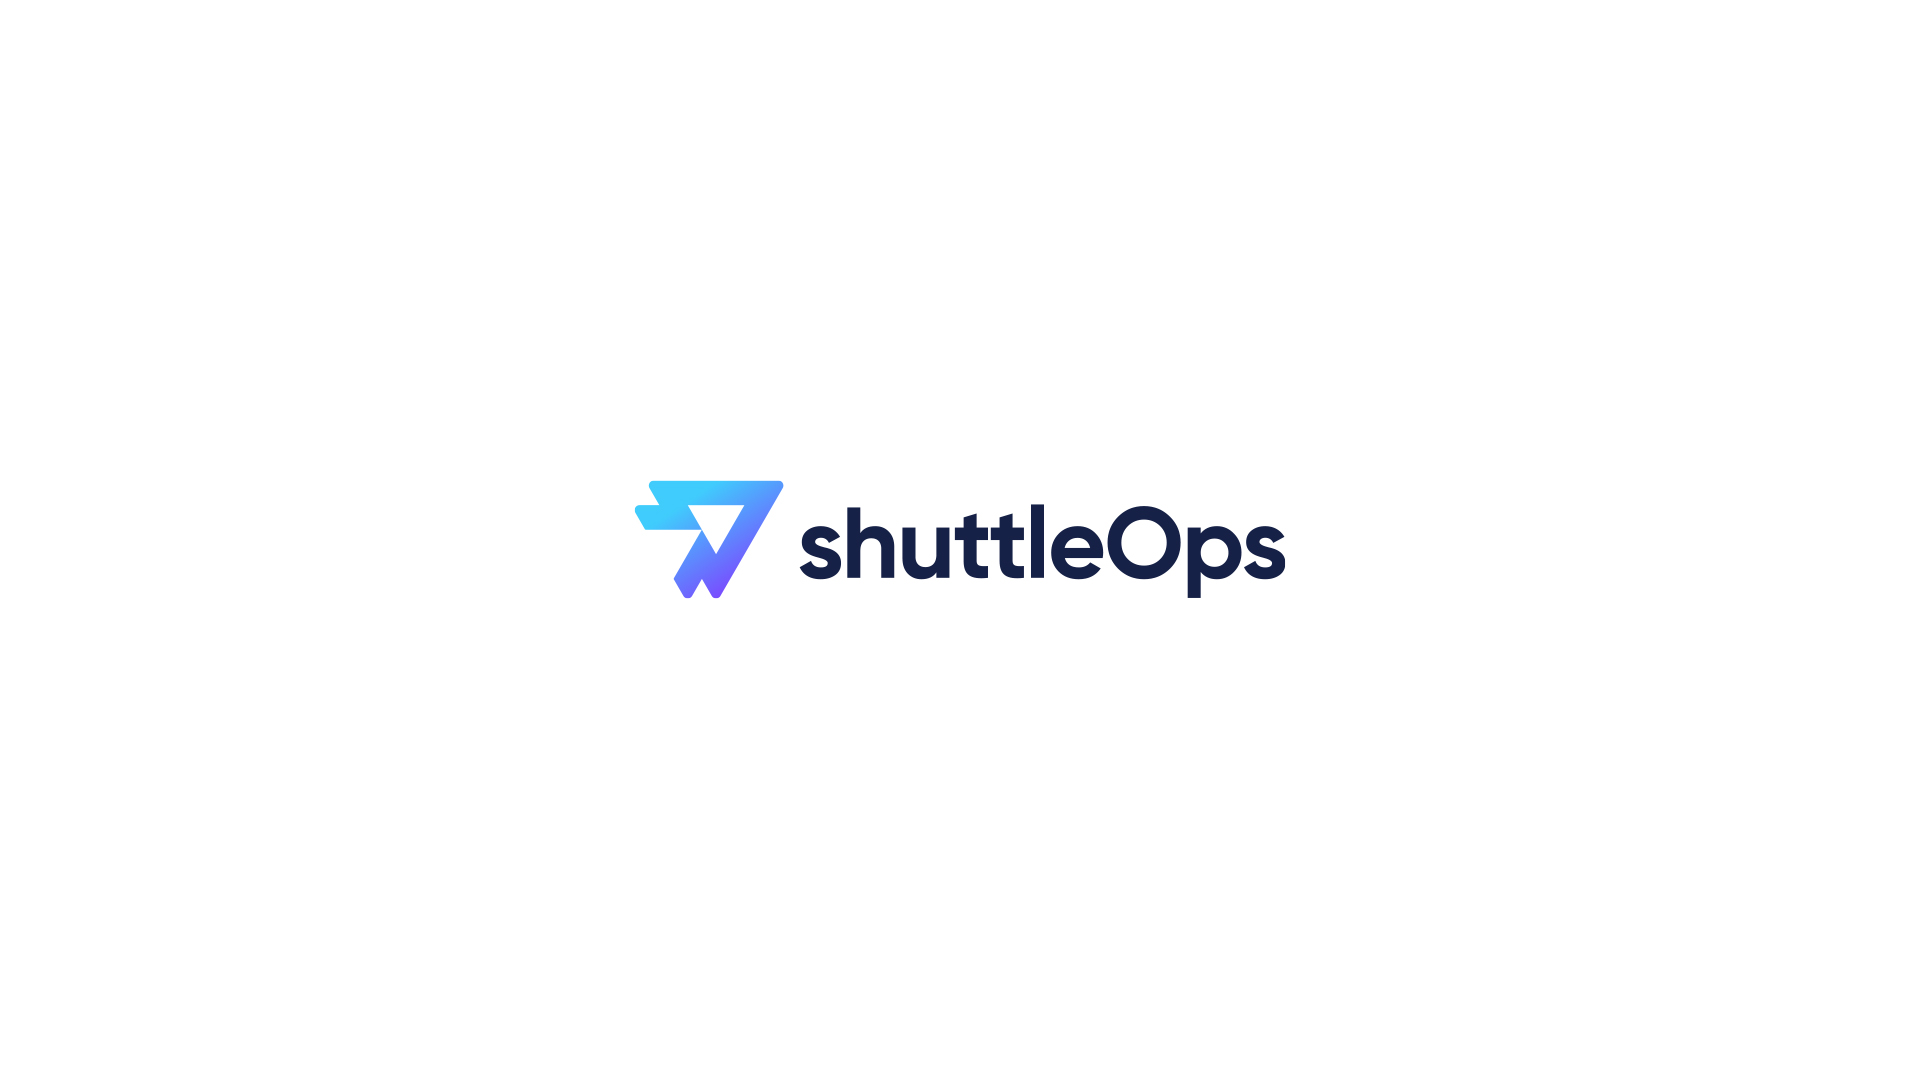 ShuttleOps App Branding